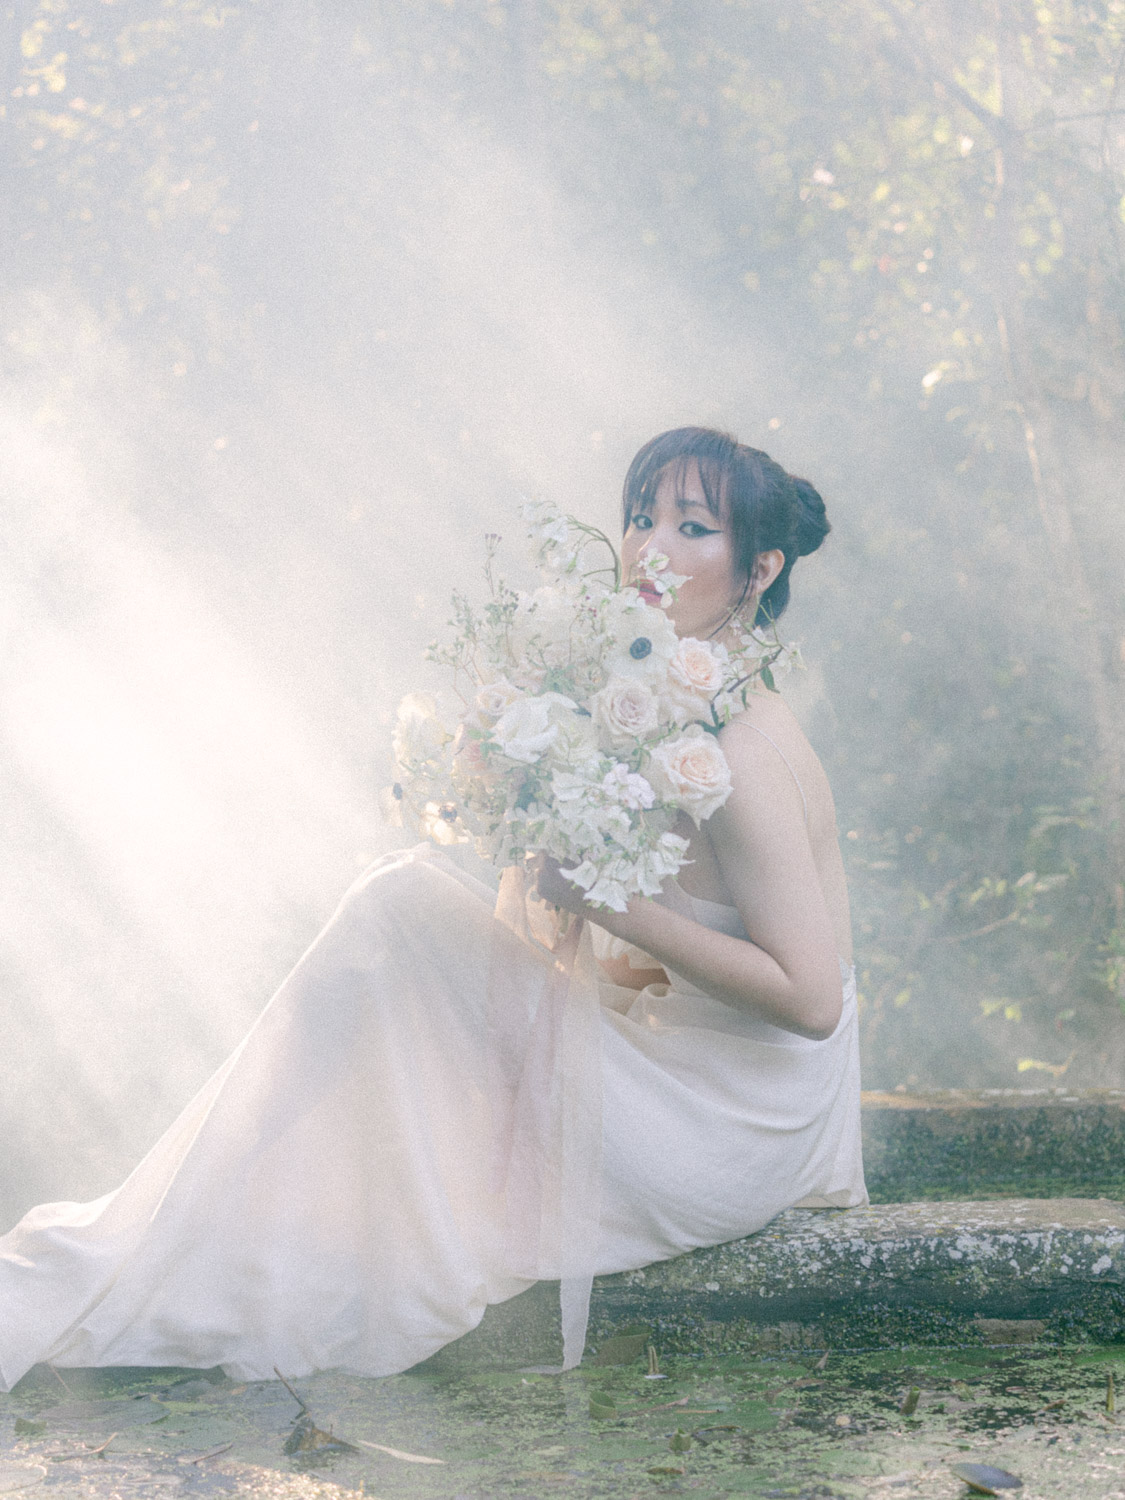 Bridal Fashion and wedding flower bouquet